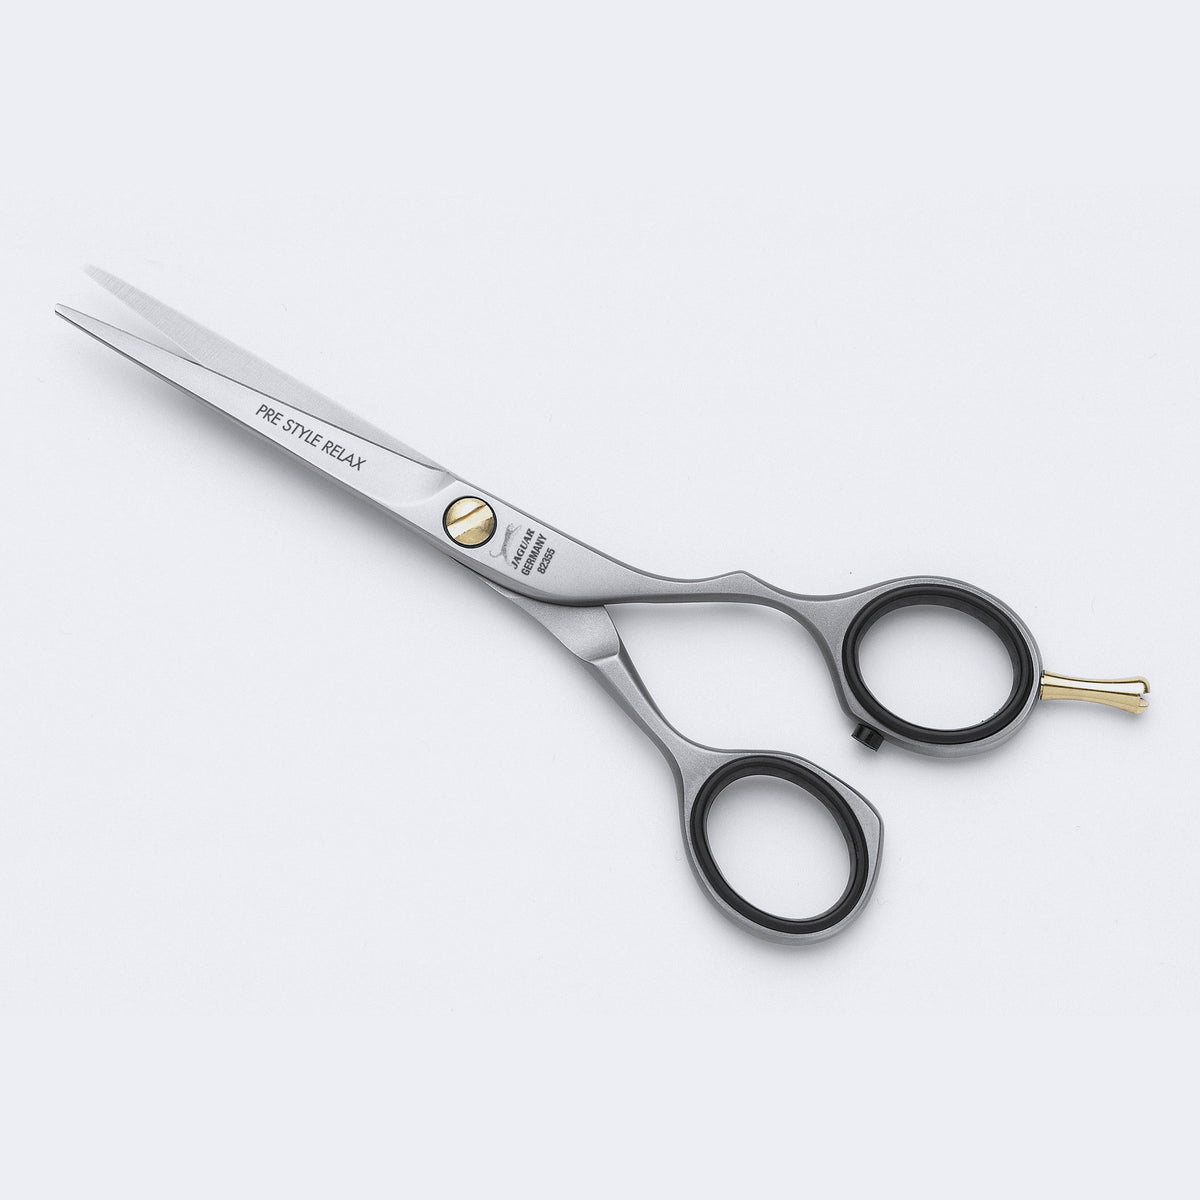 5-1/2" Relax scissors, offset handles